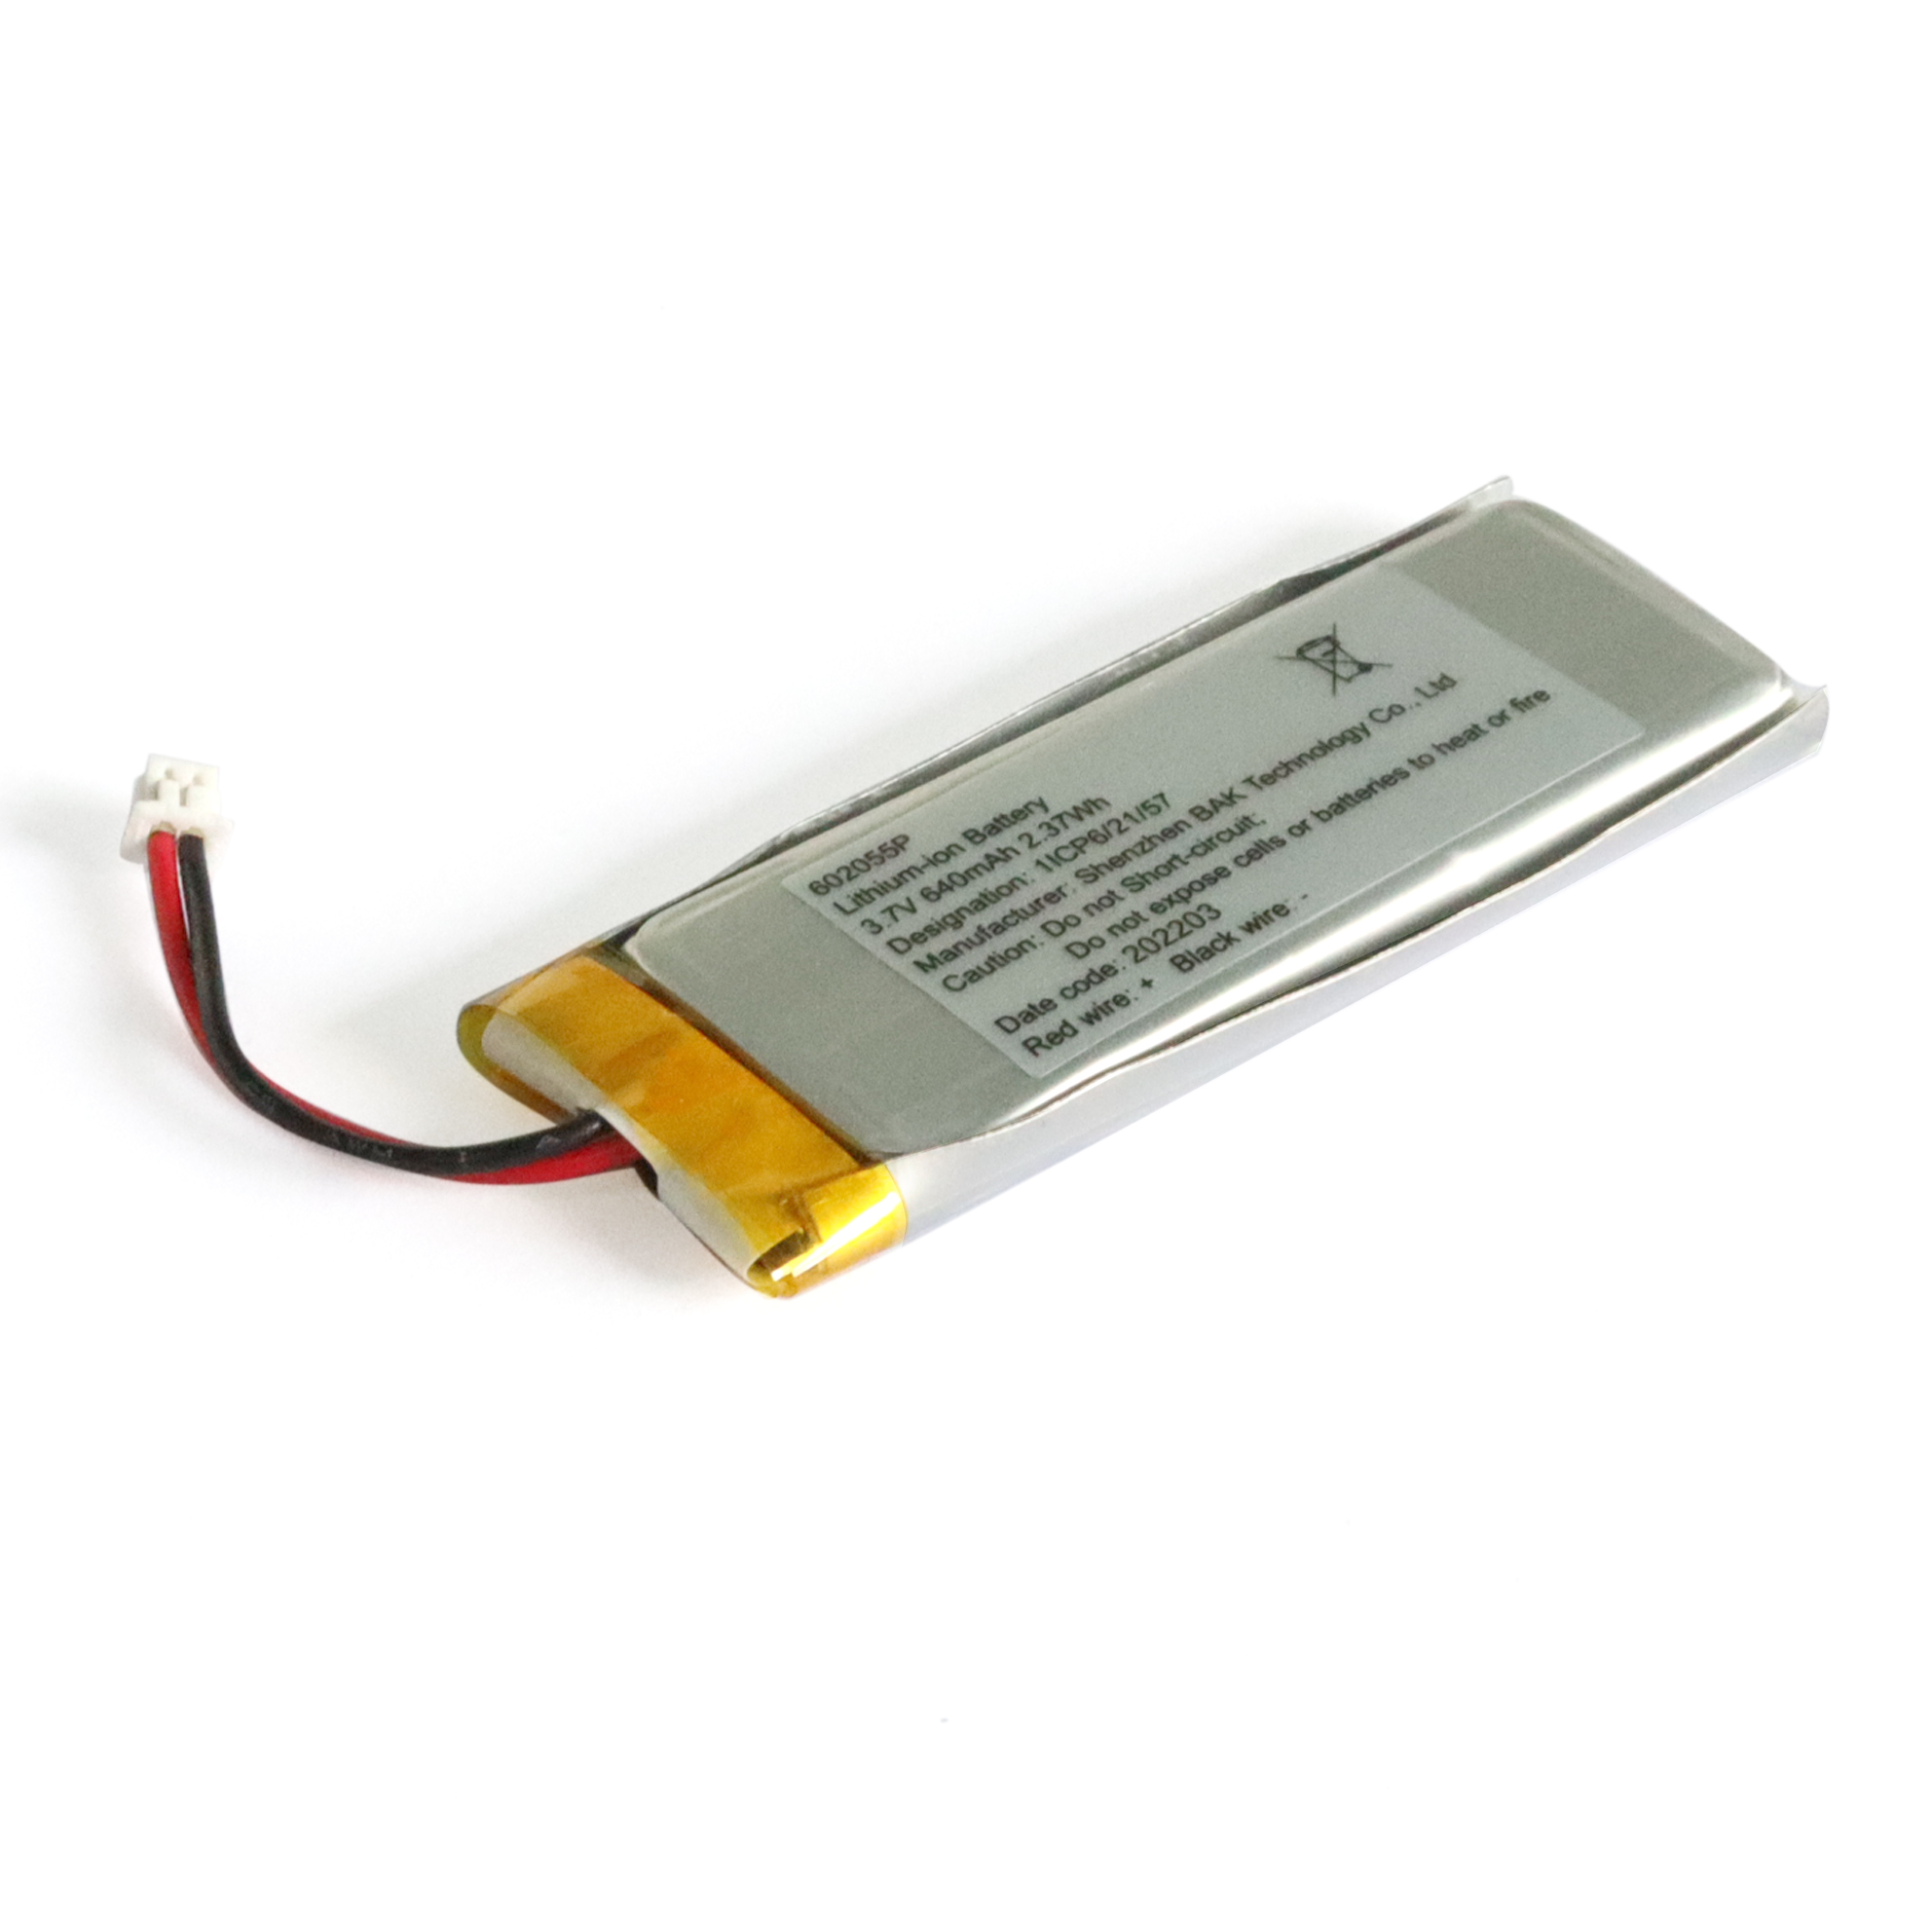 Batterie au lithium polymère 3,7 V 640 mAh pour appareil Bluetooth